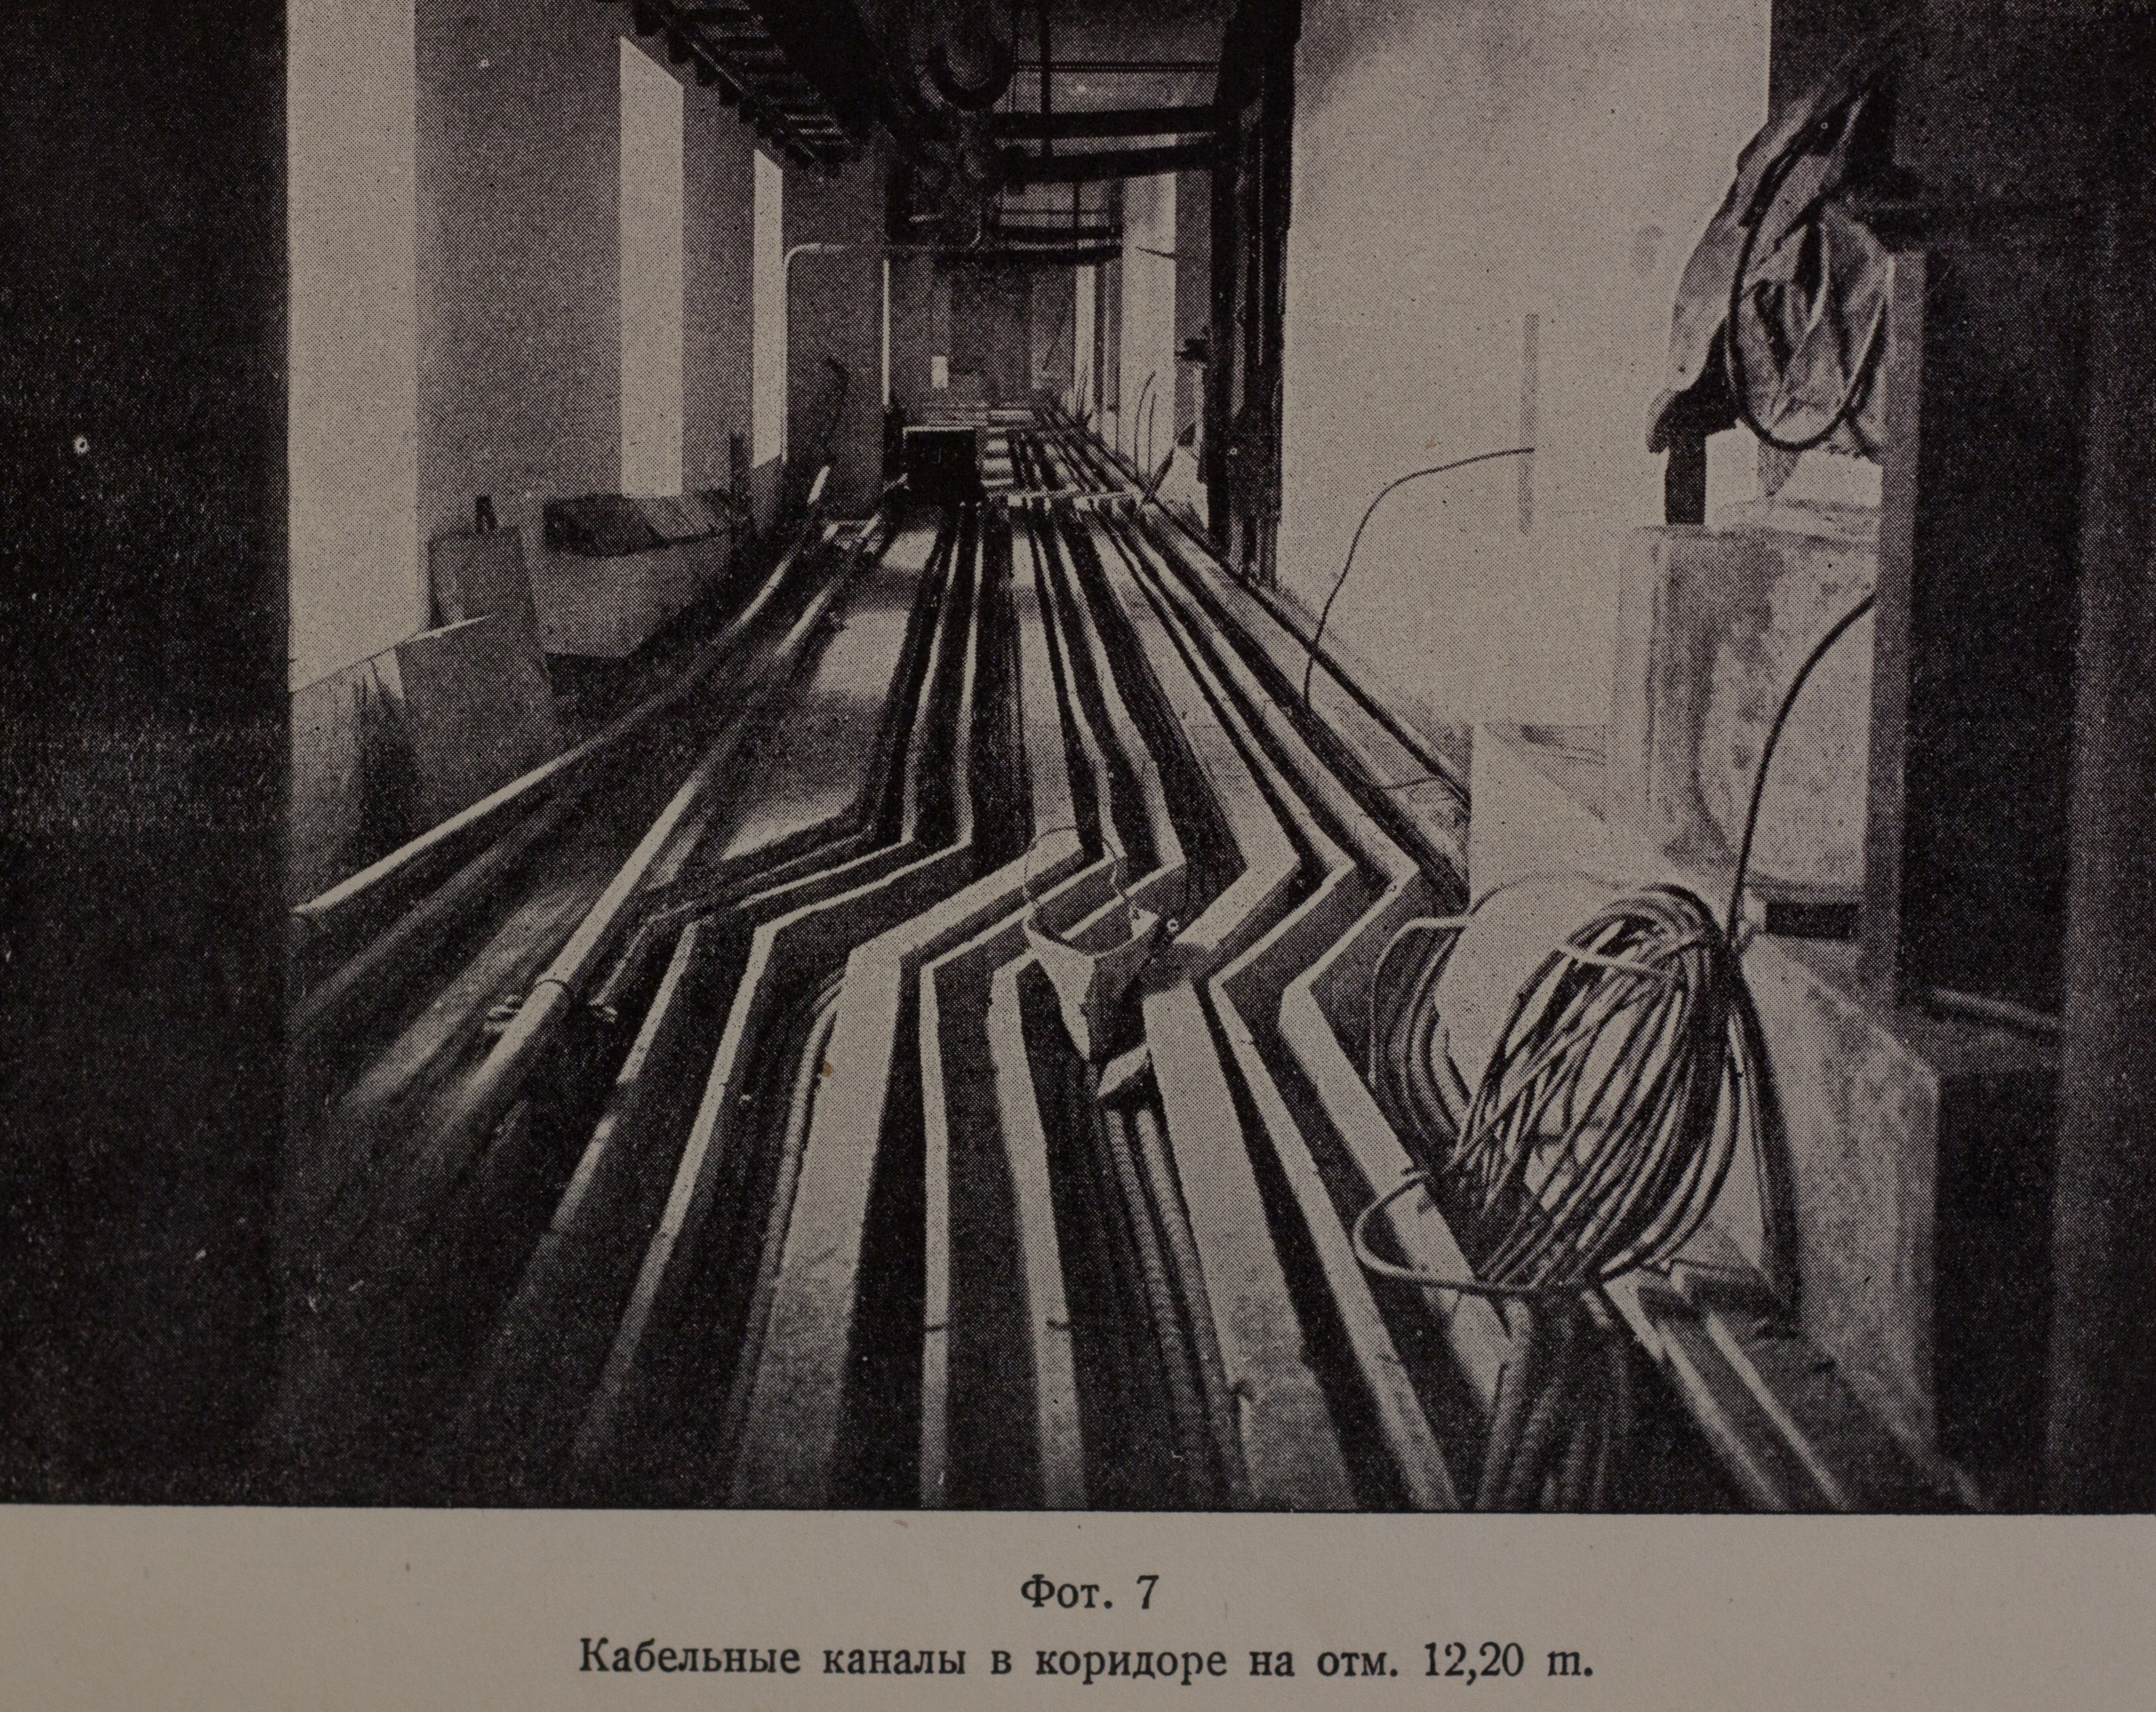 Кабельные каналы в коридоре на отм. 12,20 м